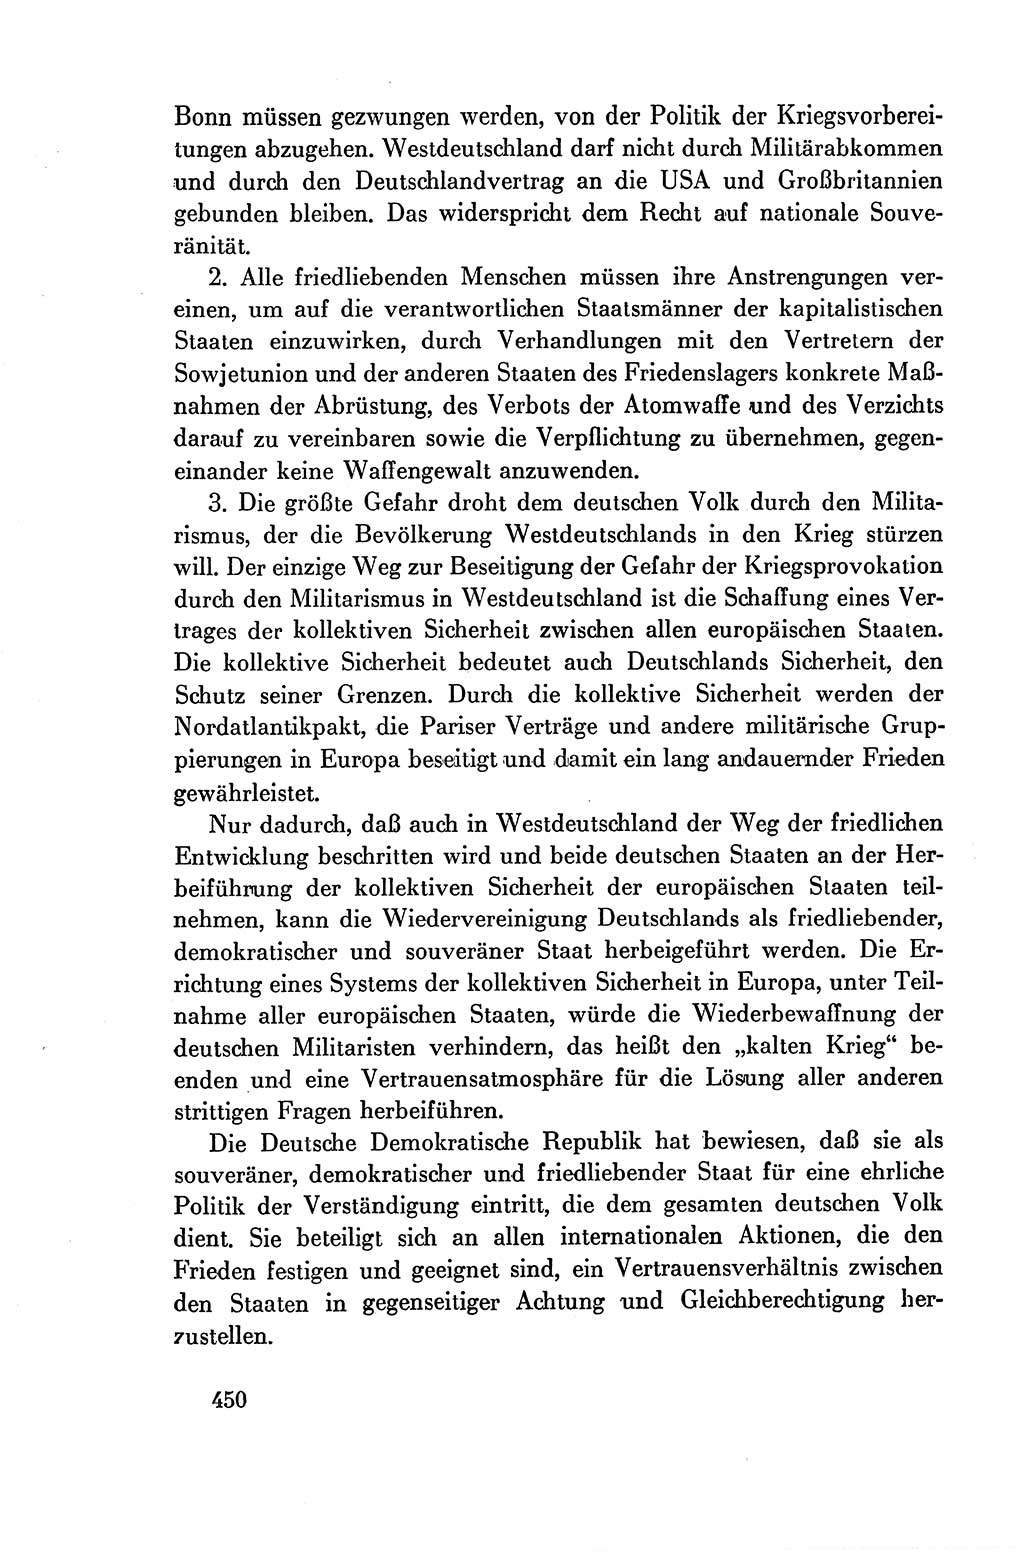 Dokumente der Sozialistischen Einheitspartei Deutschlands (SED) [Deutsche Demokratische Republik (DDR)] 1954-1955, Seite 450 (Dok. SED DDR 1954-1955, S. 450)